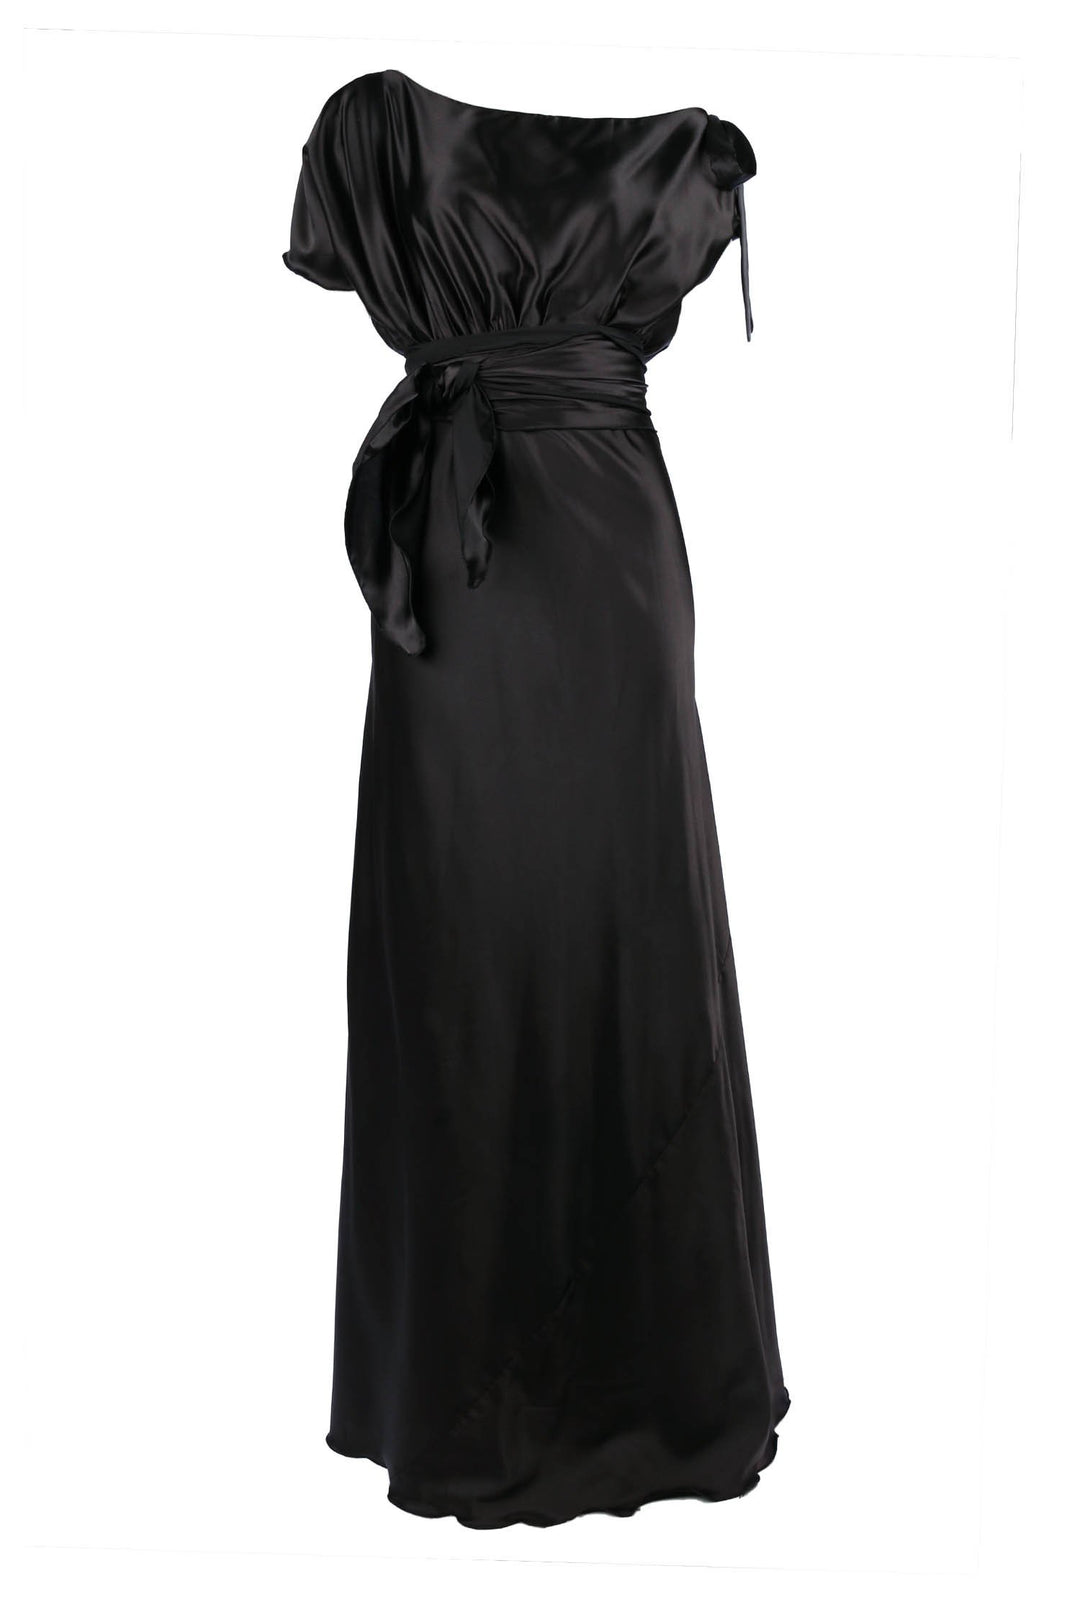 Serena Dress in Black Dresses Lucy Laurita - Leiela 